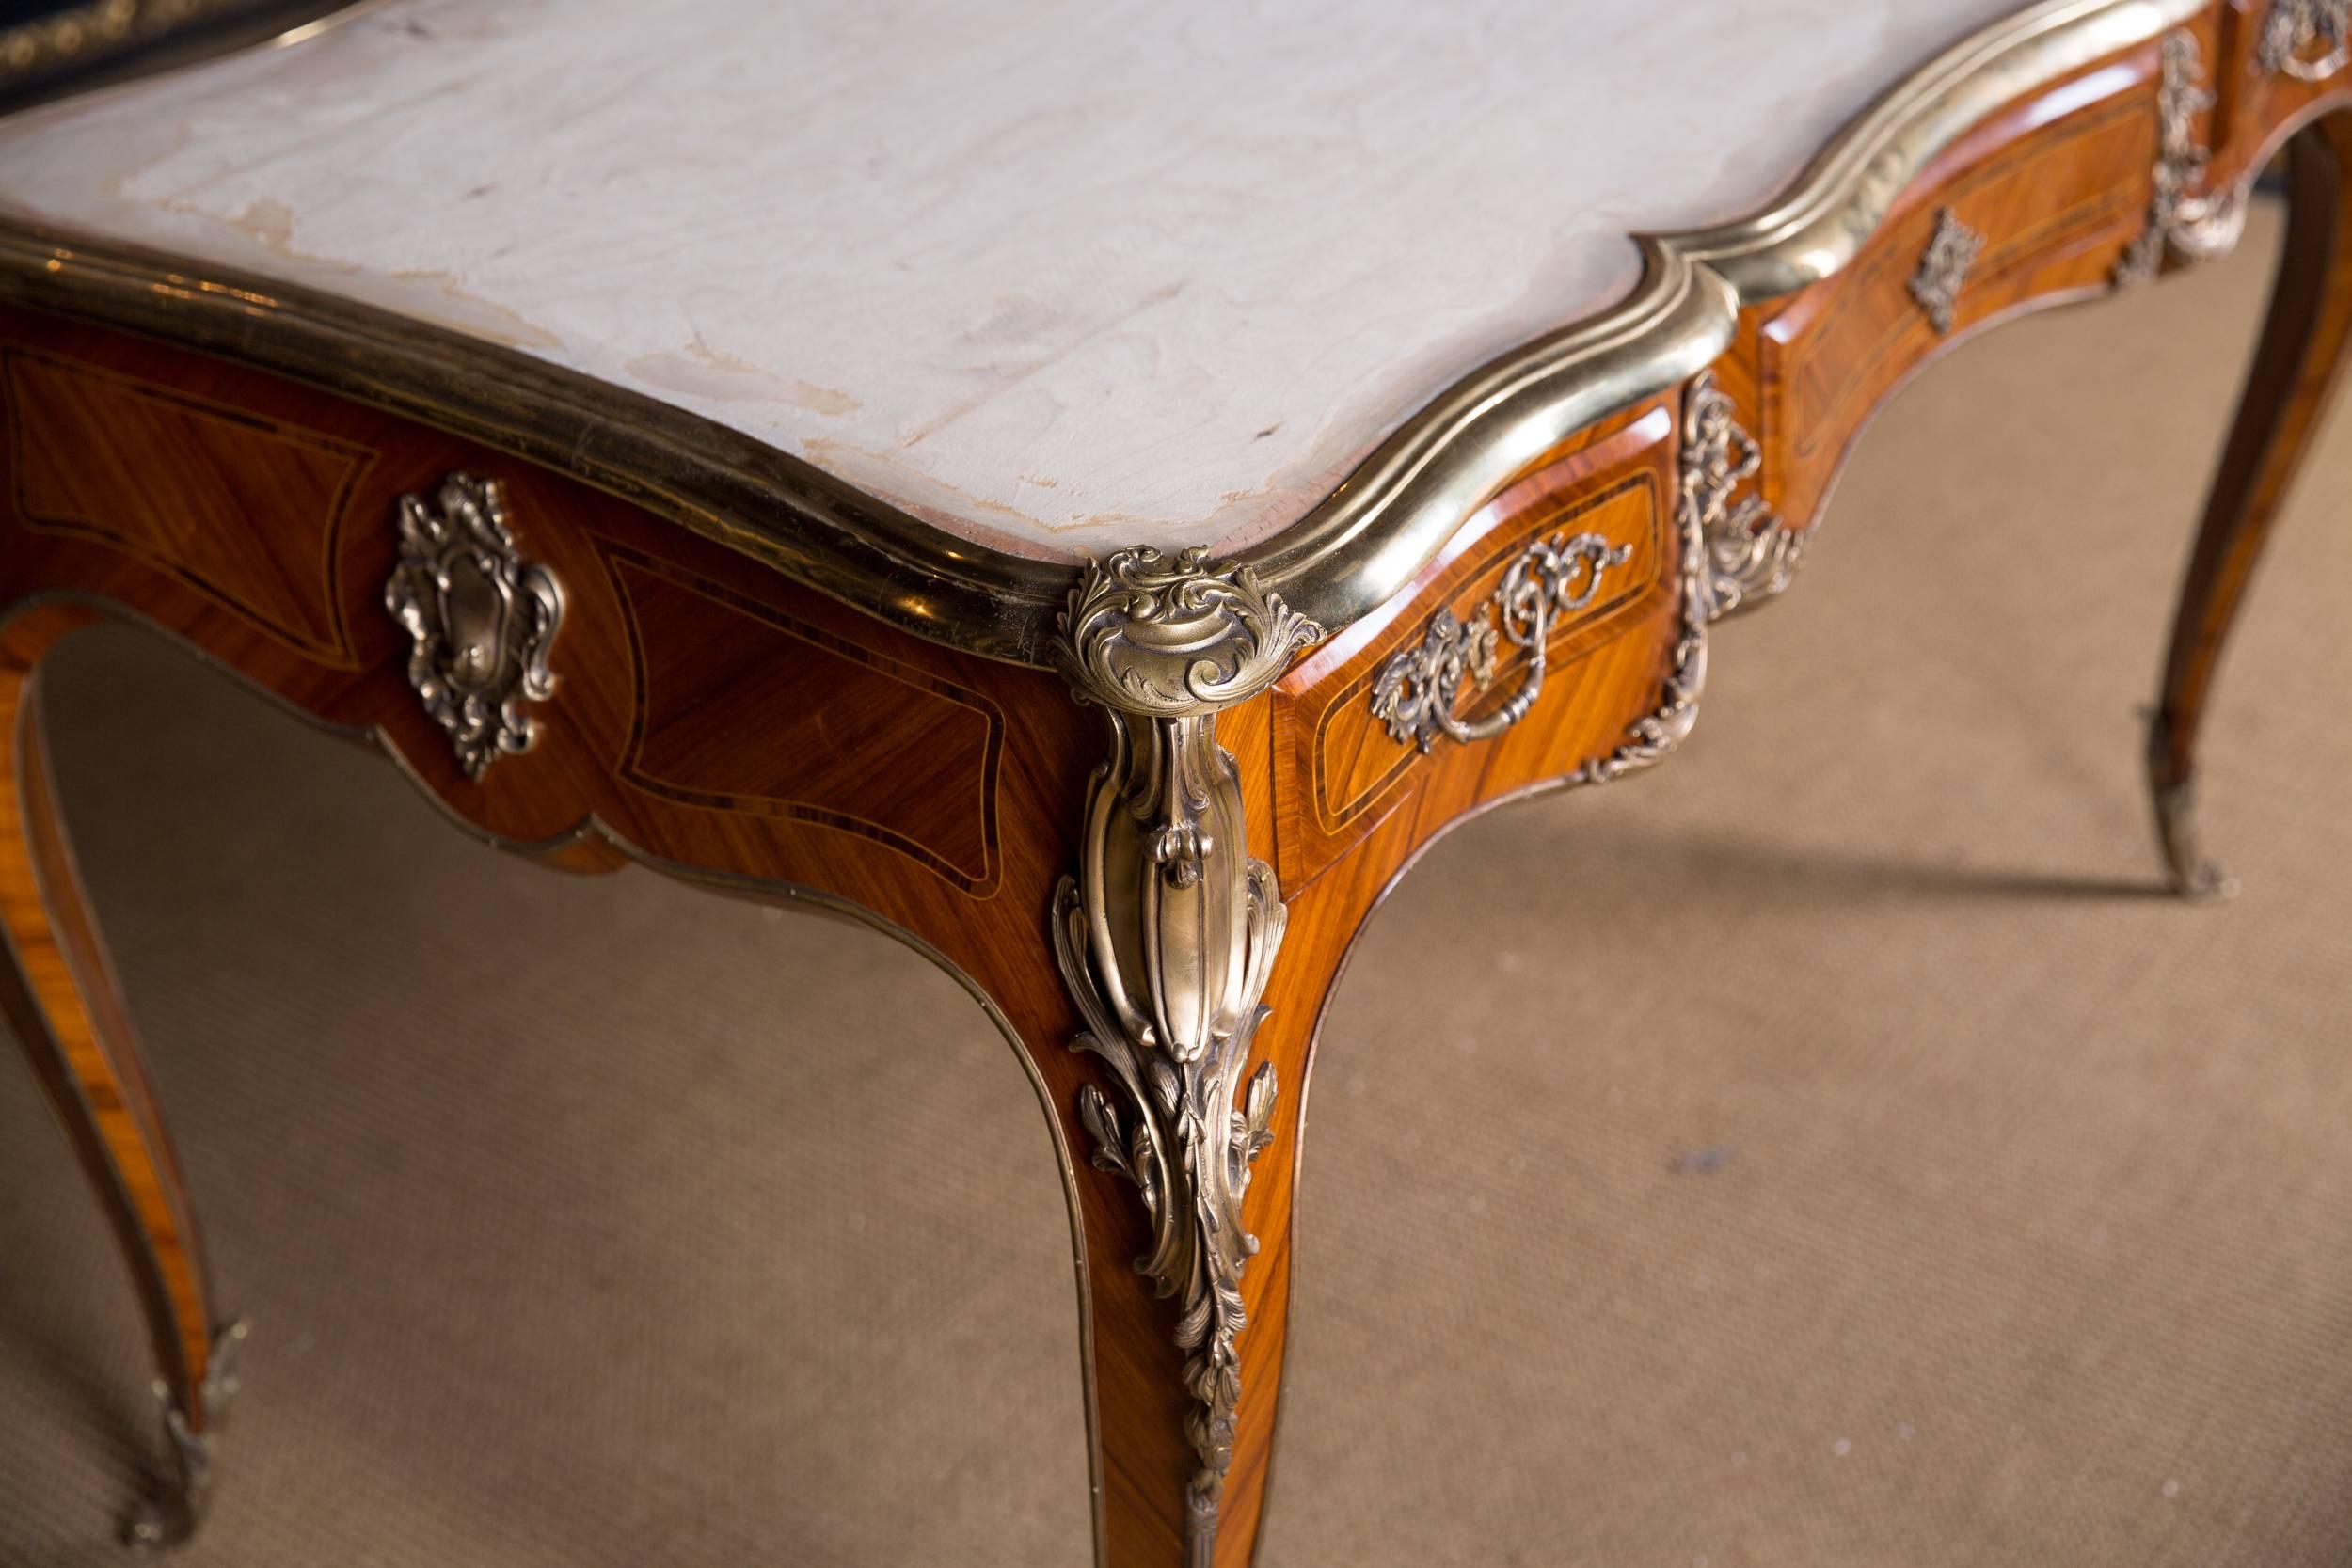  20th Century Desk Bureau Plat in Louis XV Style Excellent Quality 1